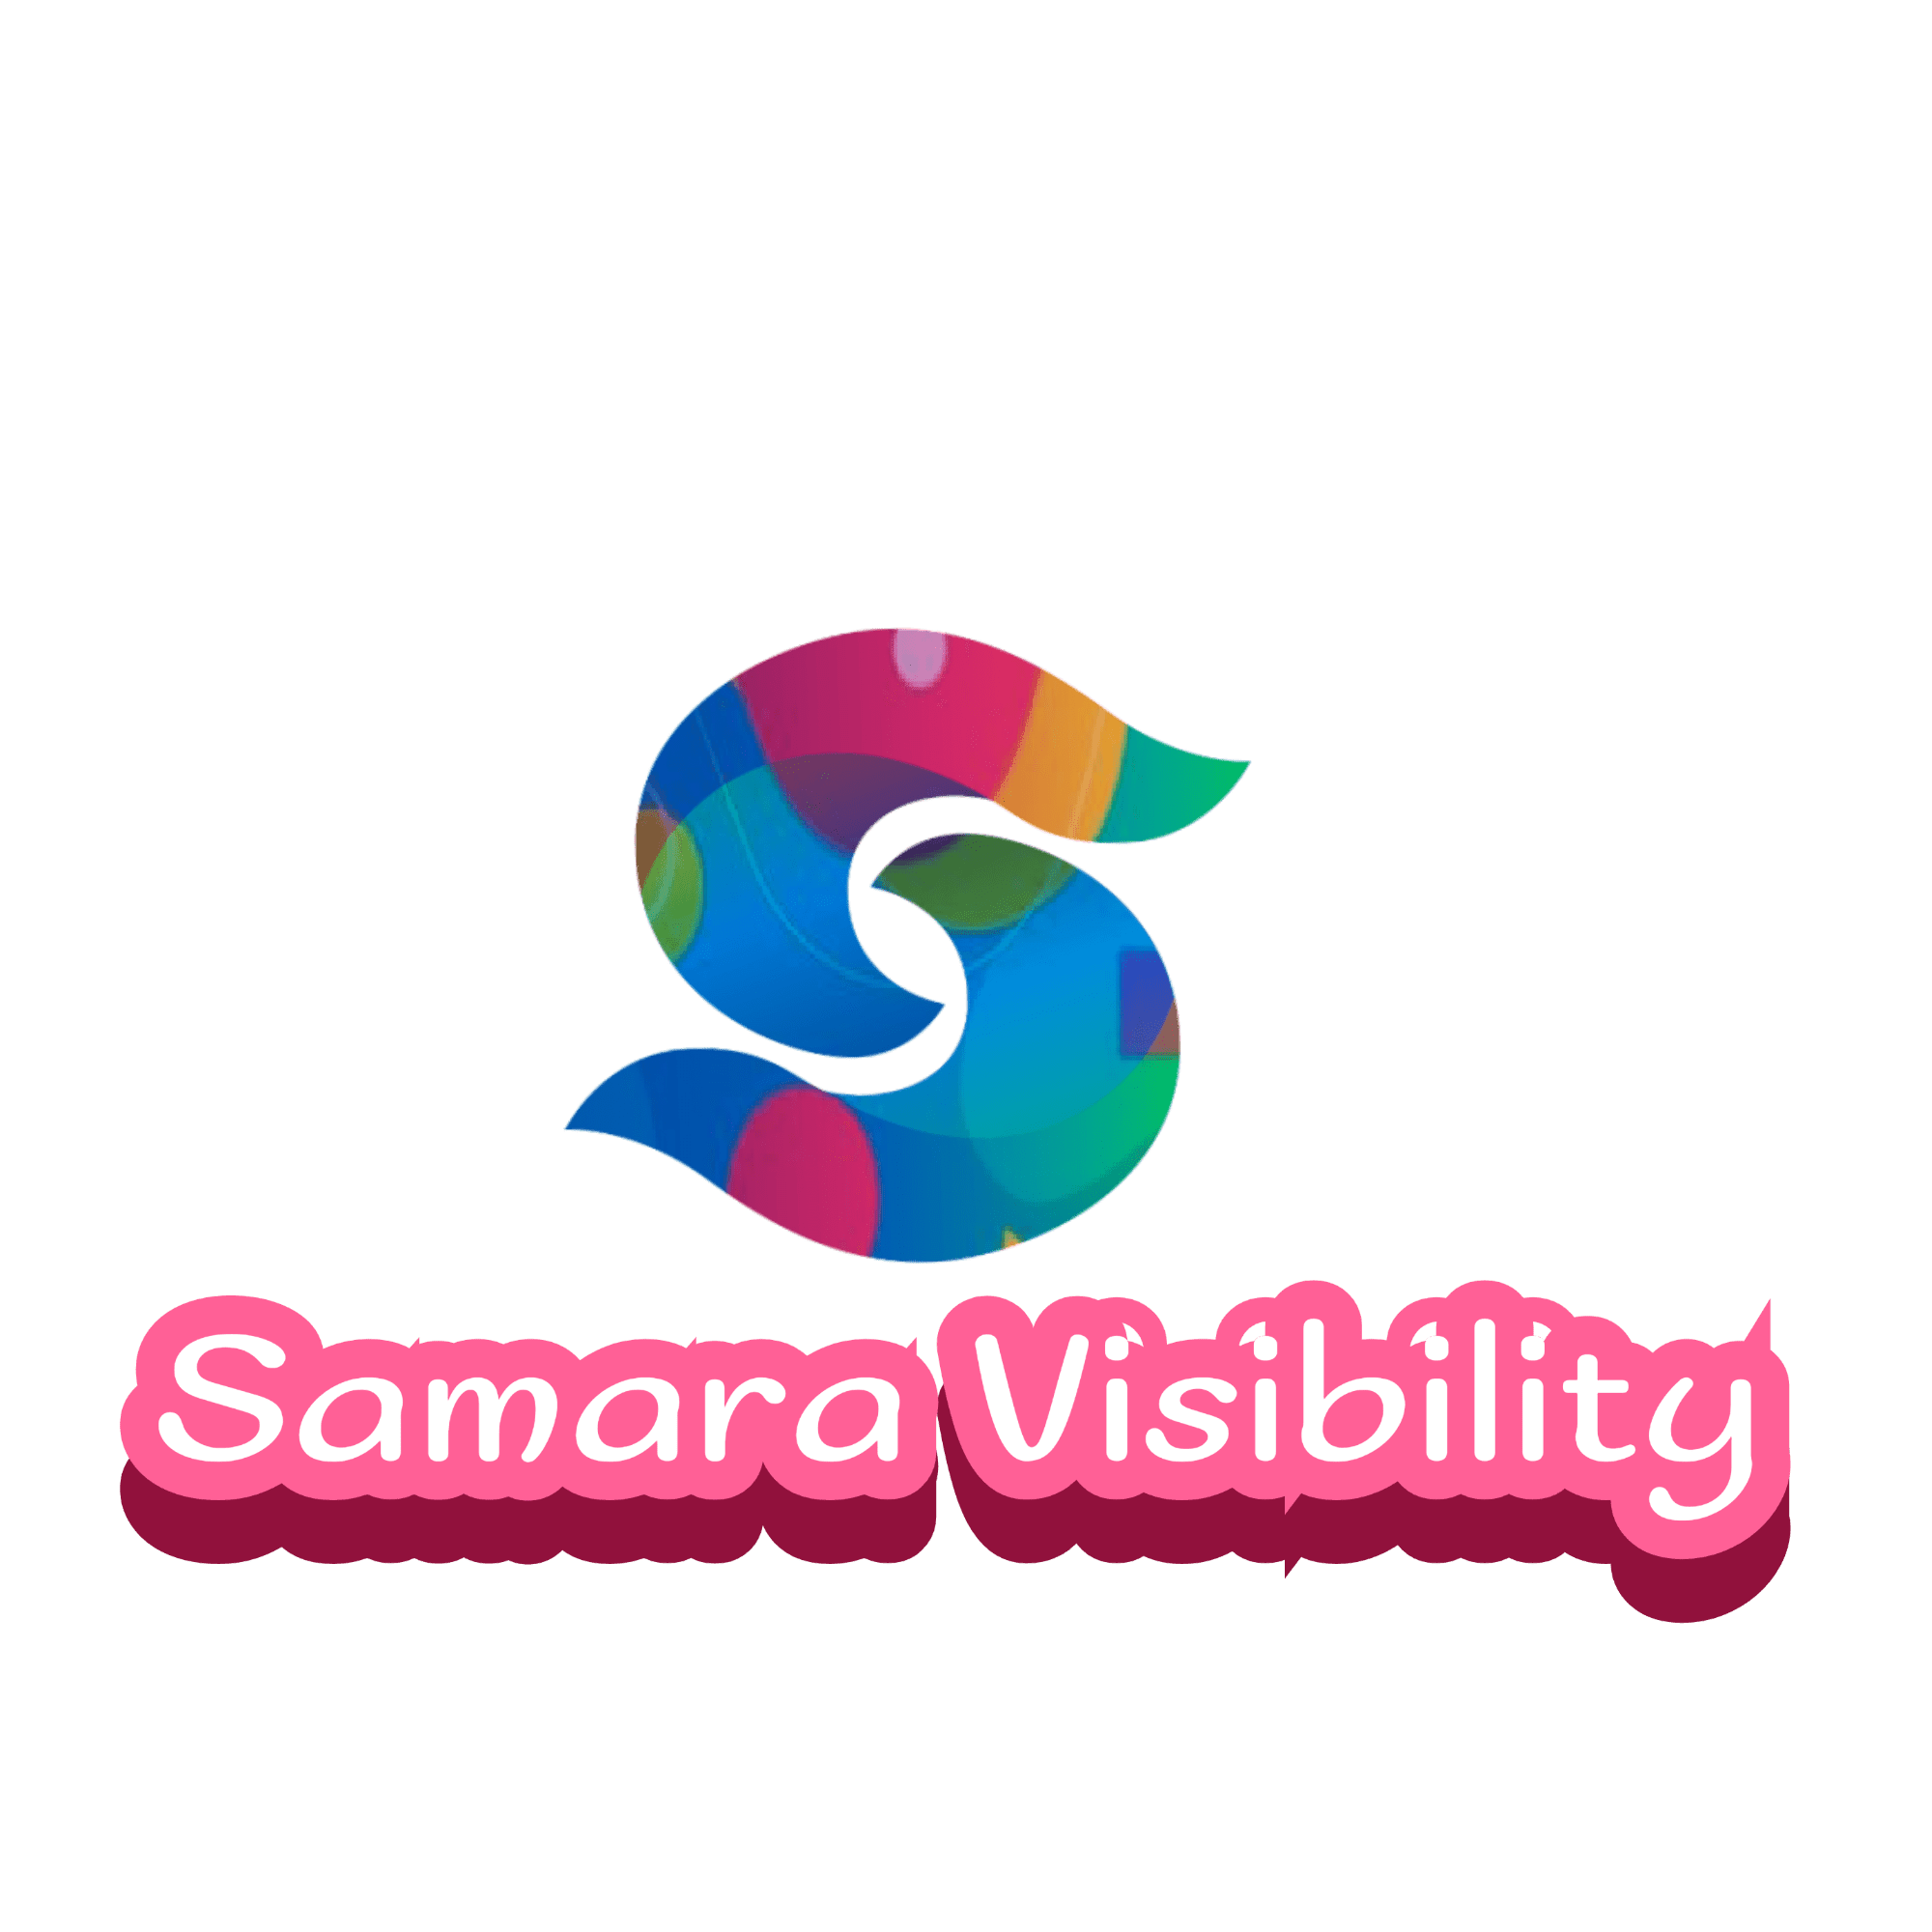 Samara Visibility